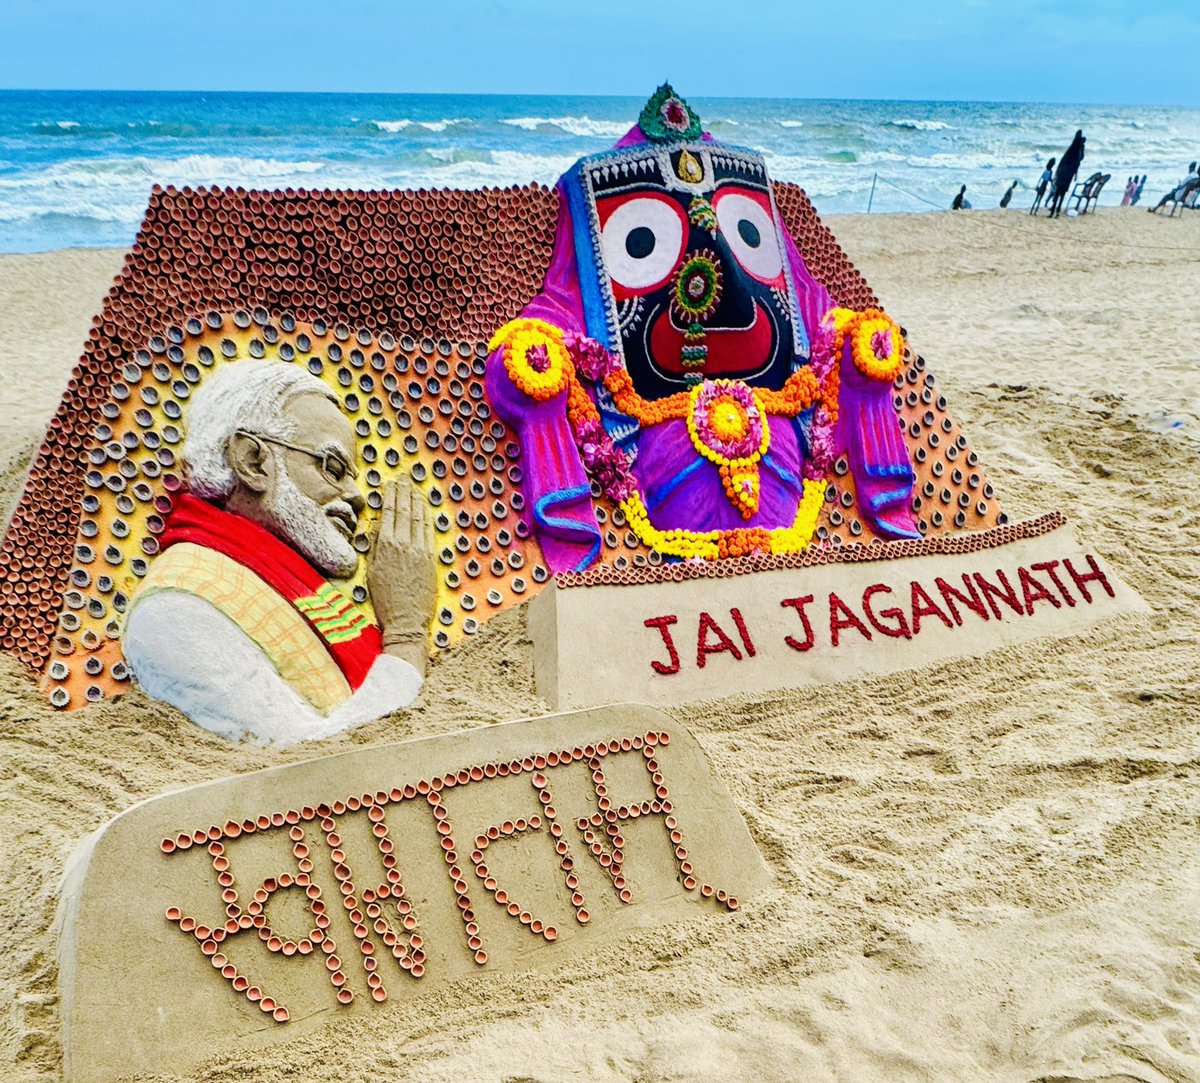 Jai Jagannath 🙏 Swagatam Hon’ble PM Shri @narendramodi ji to Jagannath Dham, #Puri . My installation sand art at Puri beach in Odisha.